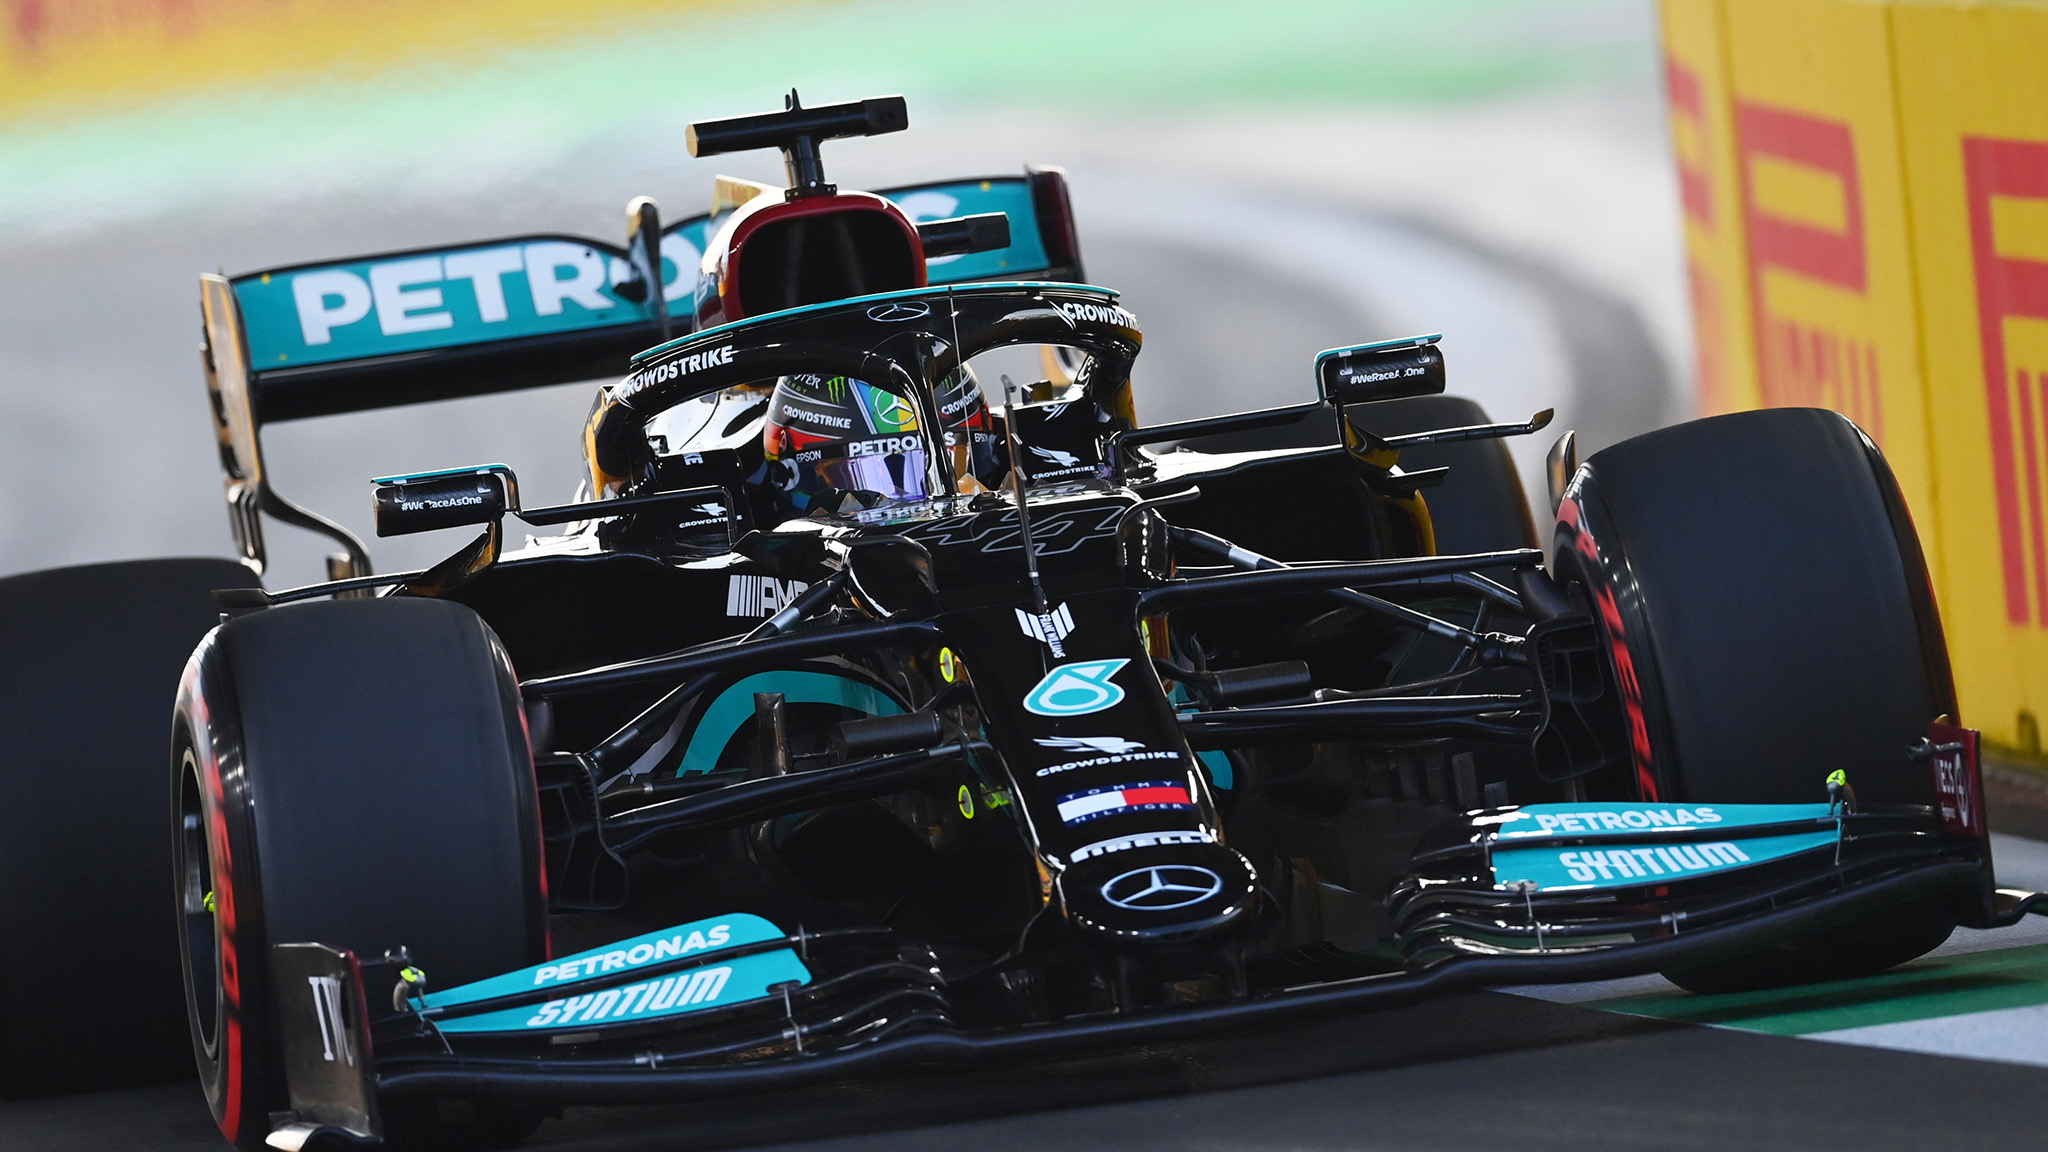 Formel 1 Der Große Preis von Abu Dhabi live im TV und Stream